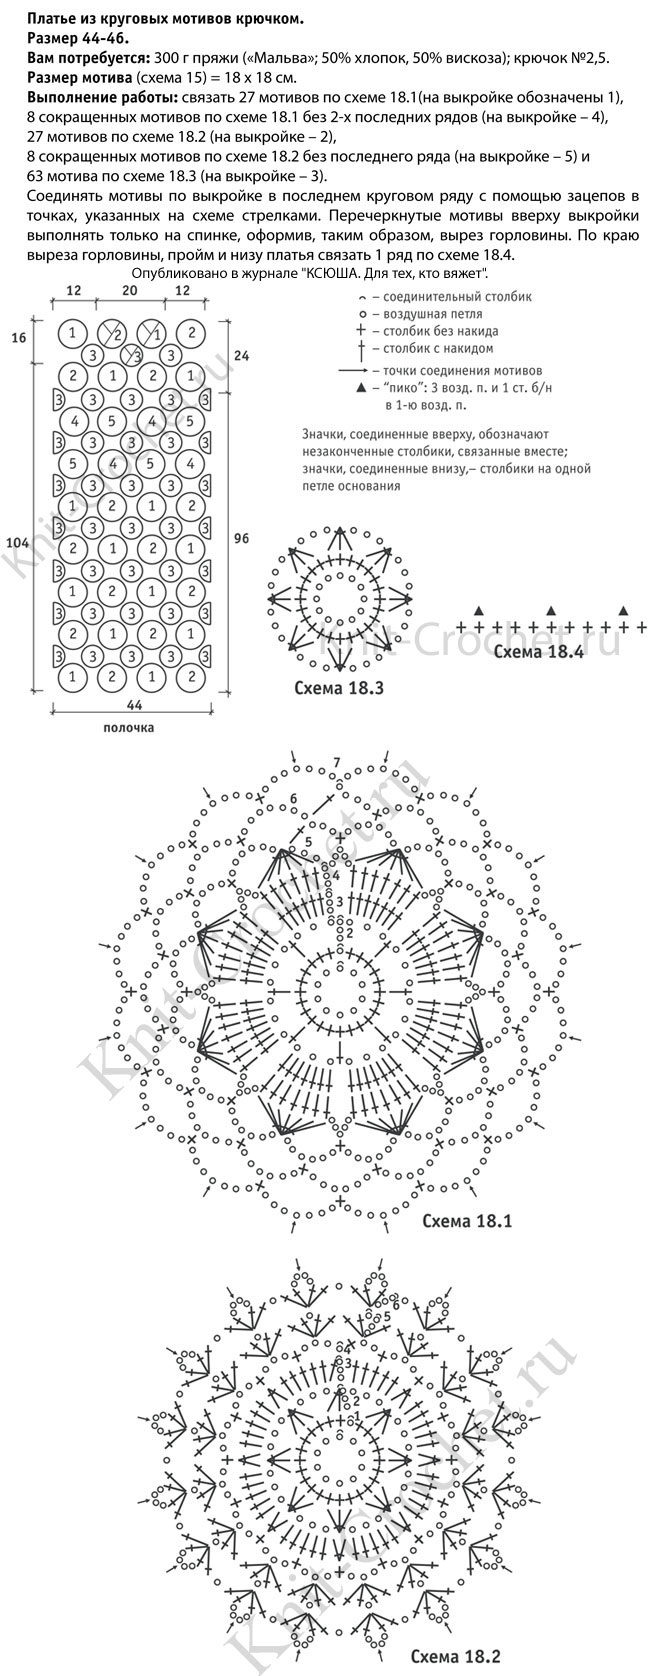 Выкройка, схемы узоров с описанием вязания из круговых мотивов крючком женского платья размера 44-46.